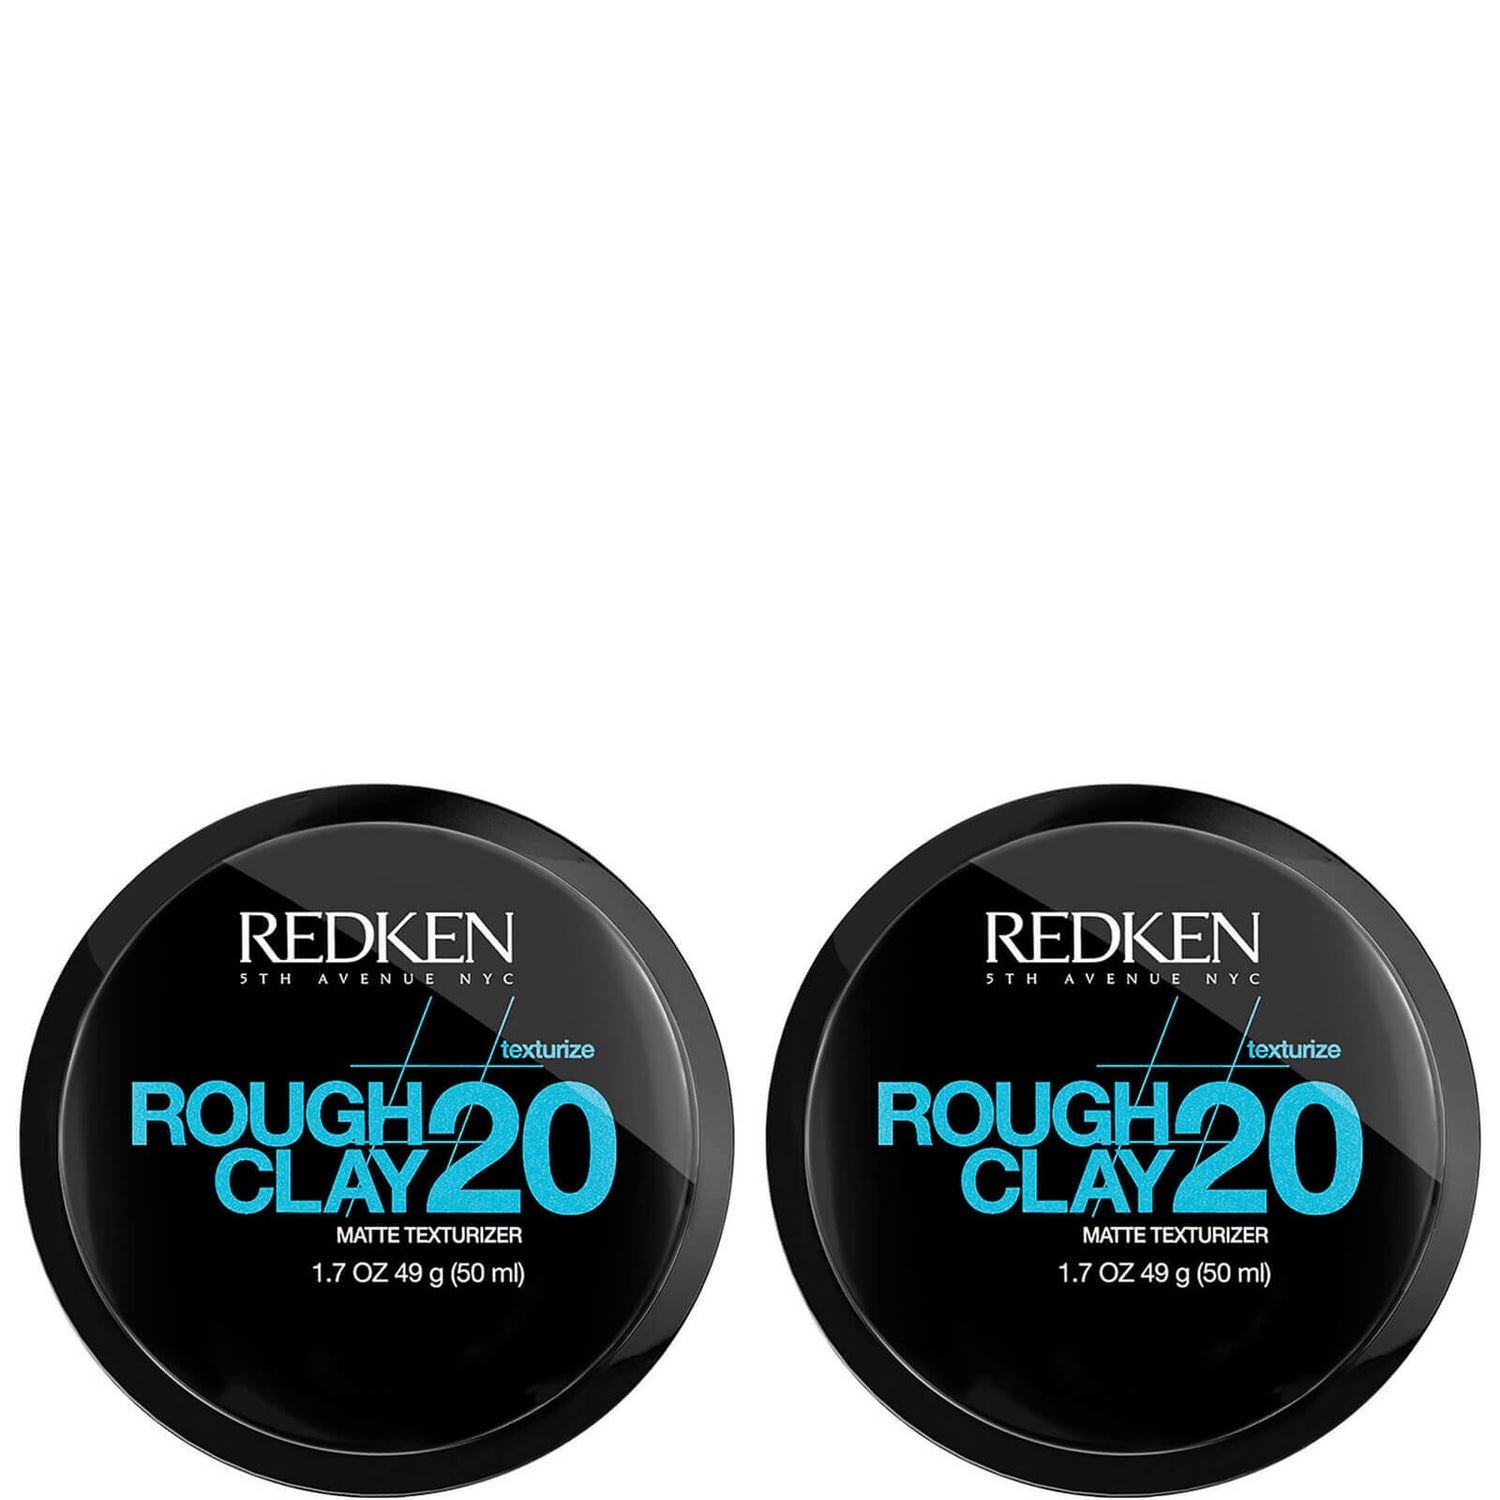 Redken Styling - Rough Clay Duo glinka do stylizacji włosów - zestaw 2 sztuk (2 x 50 ml)